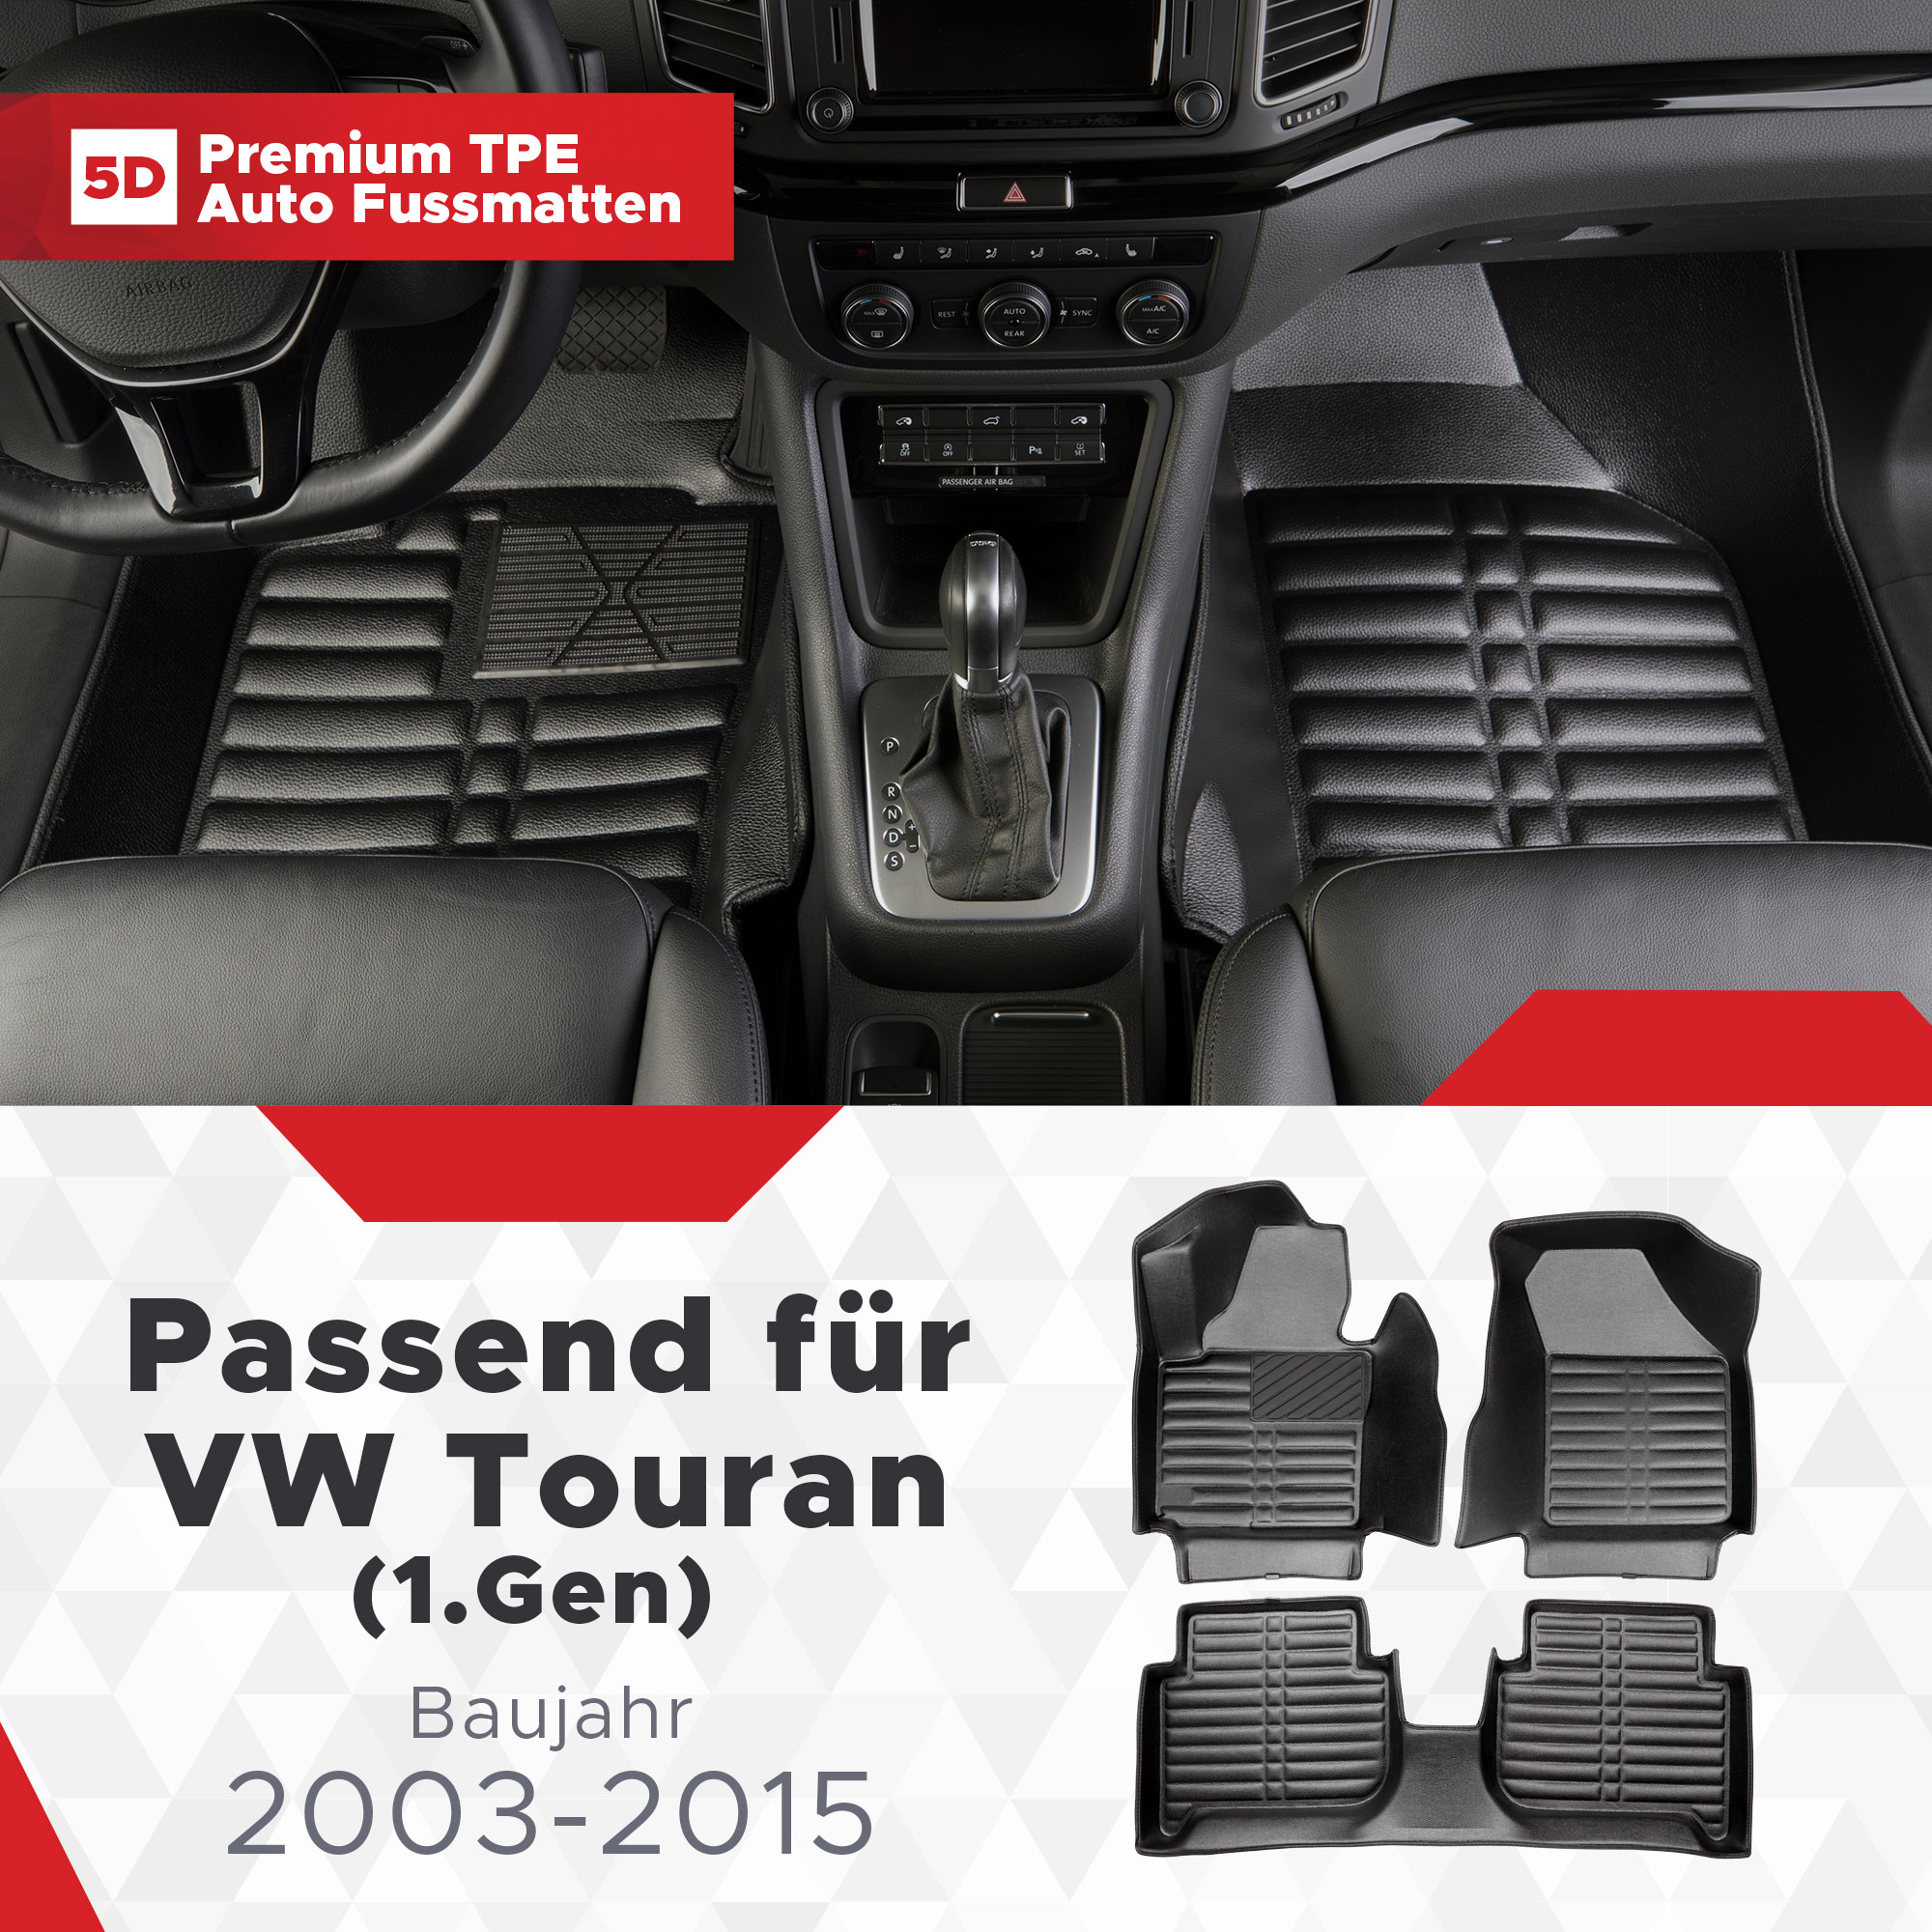 5D VW Bj Fussmatten Touran 2003-2015 TPE (1.Gen)